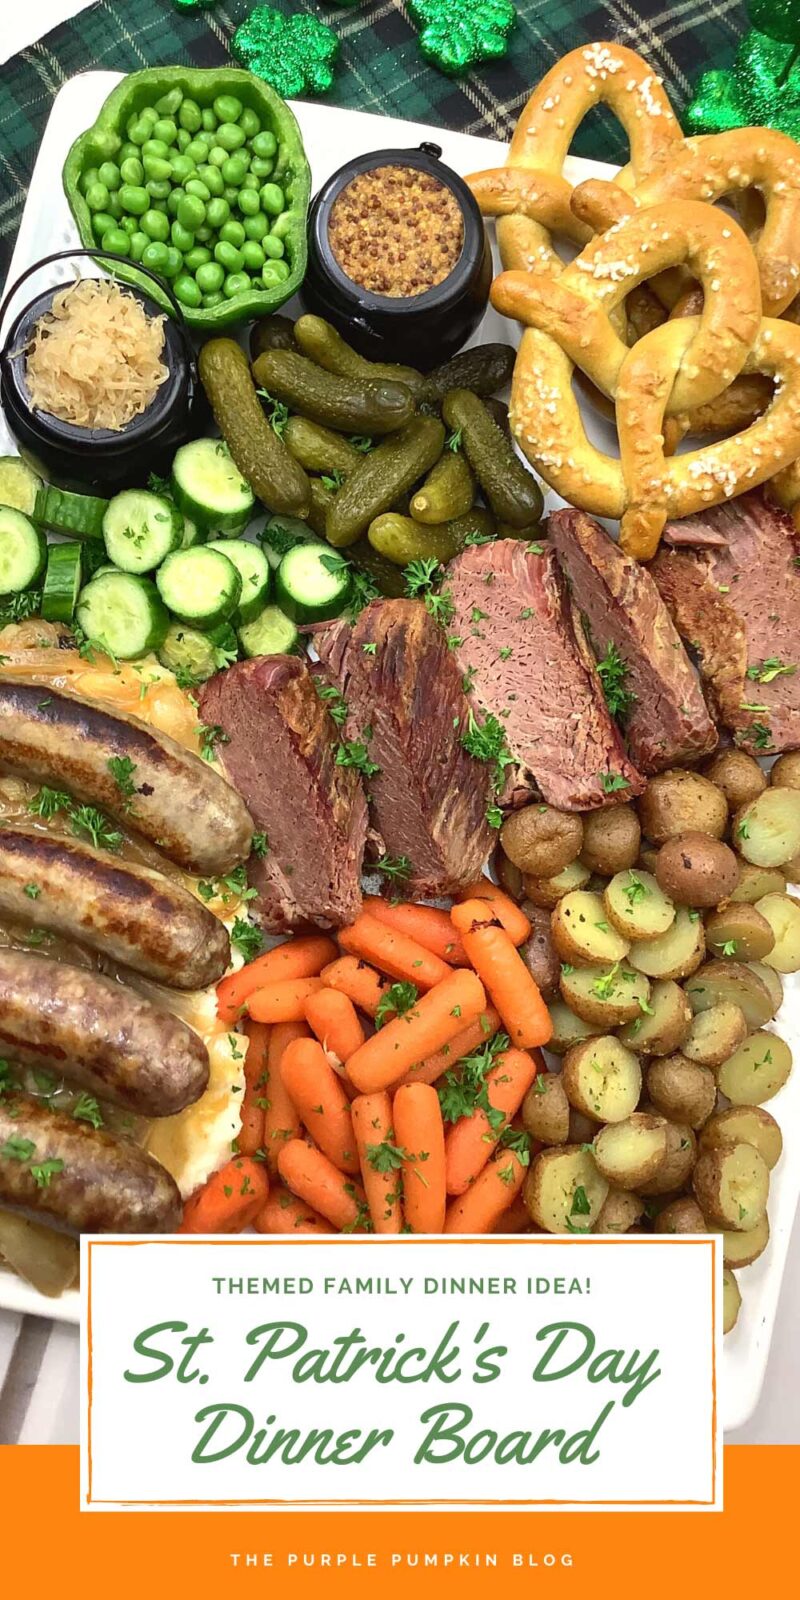 Themed Family Dinner Idea - St. Patrick's Day Dinner Board